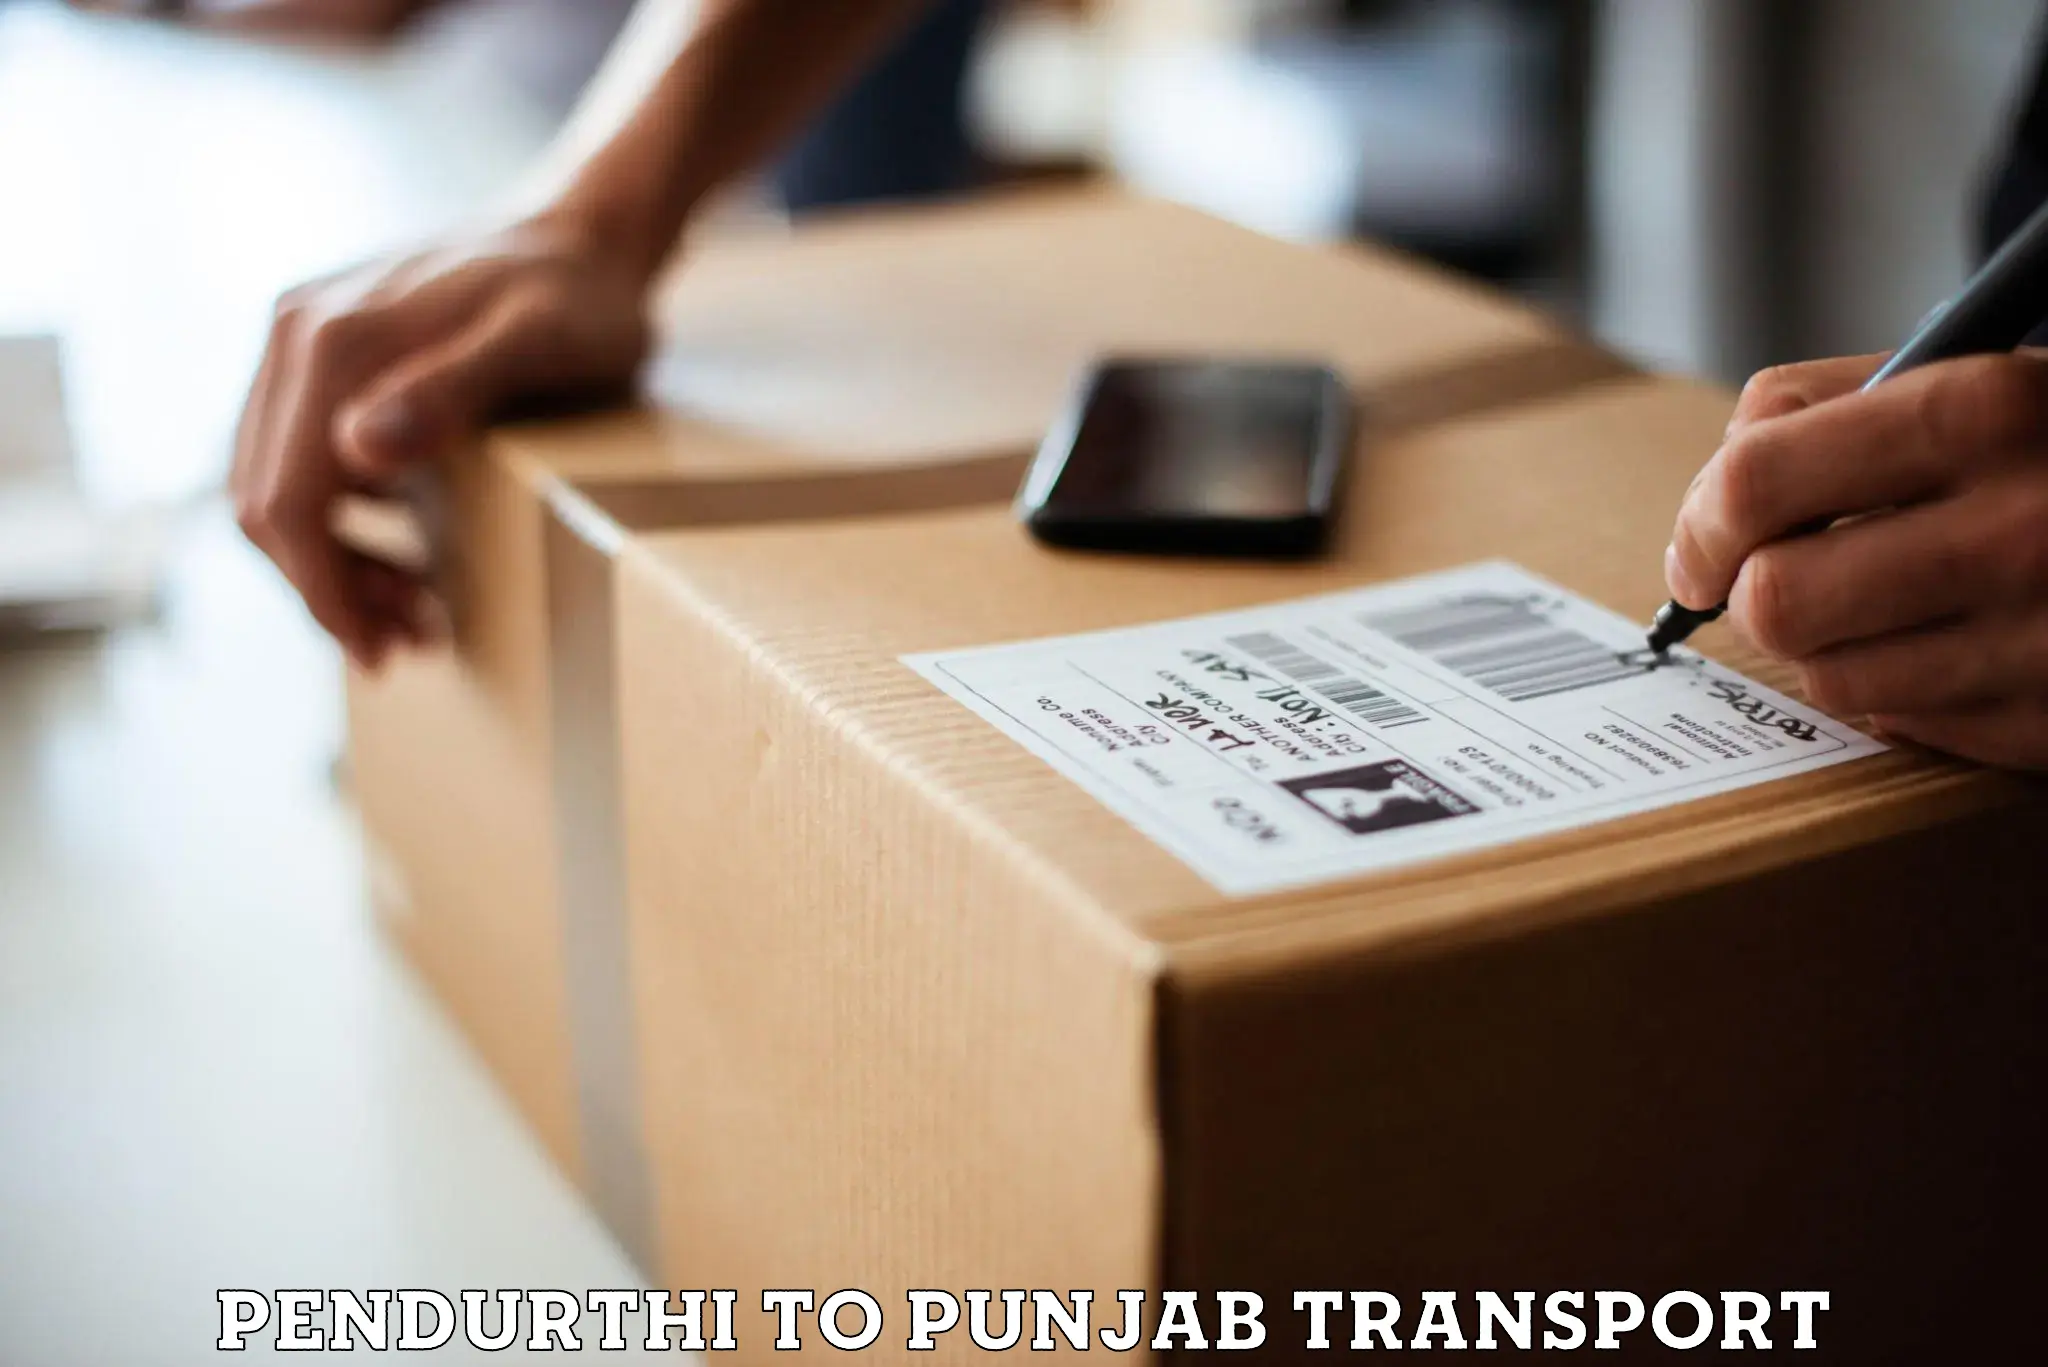 Daily transport service Pendurthi to Punjab